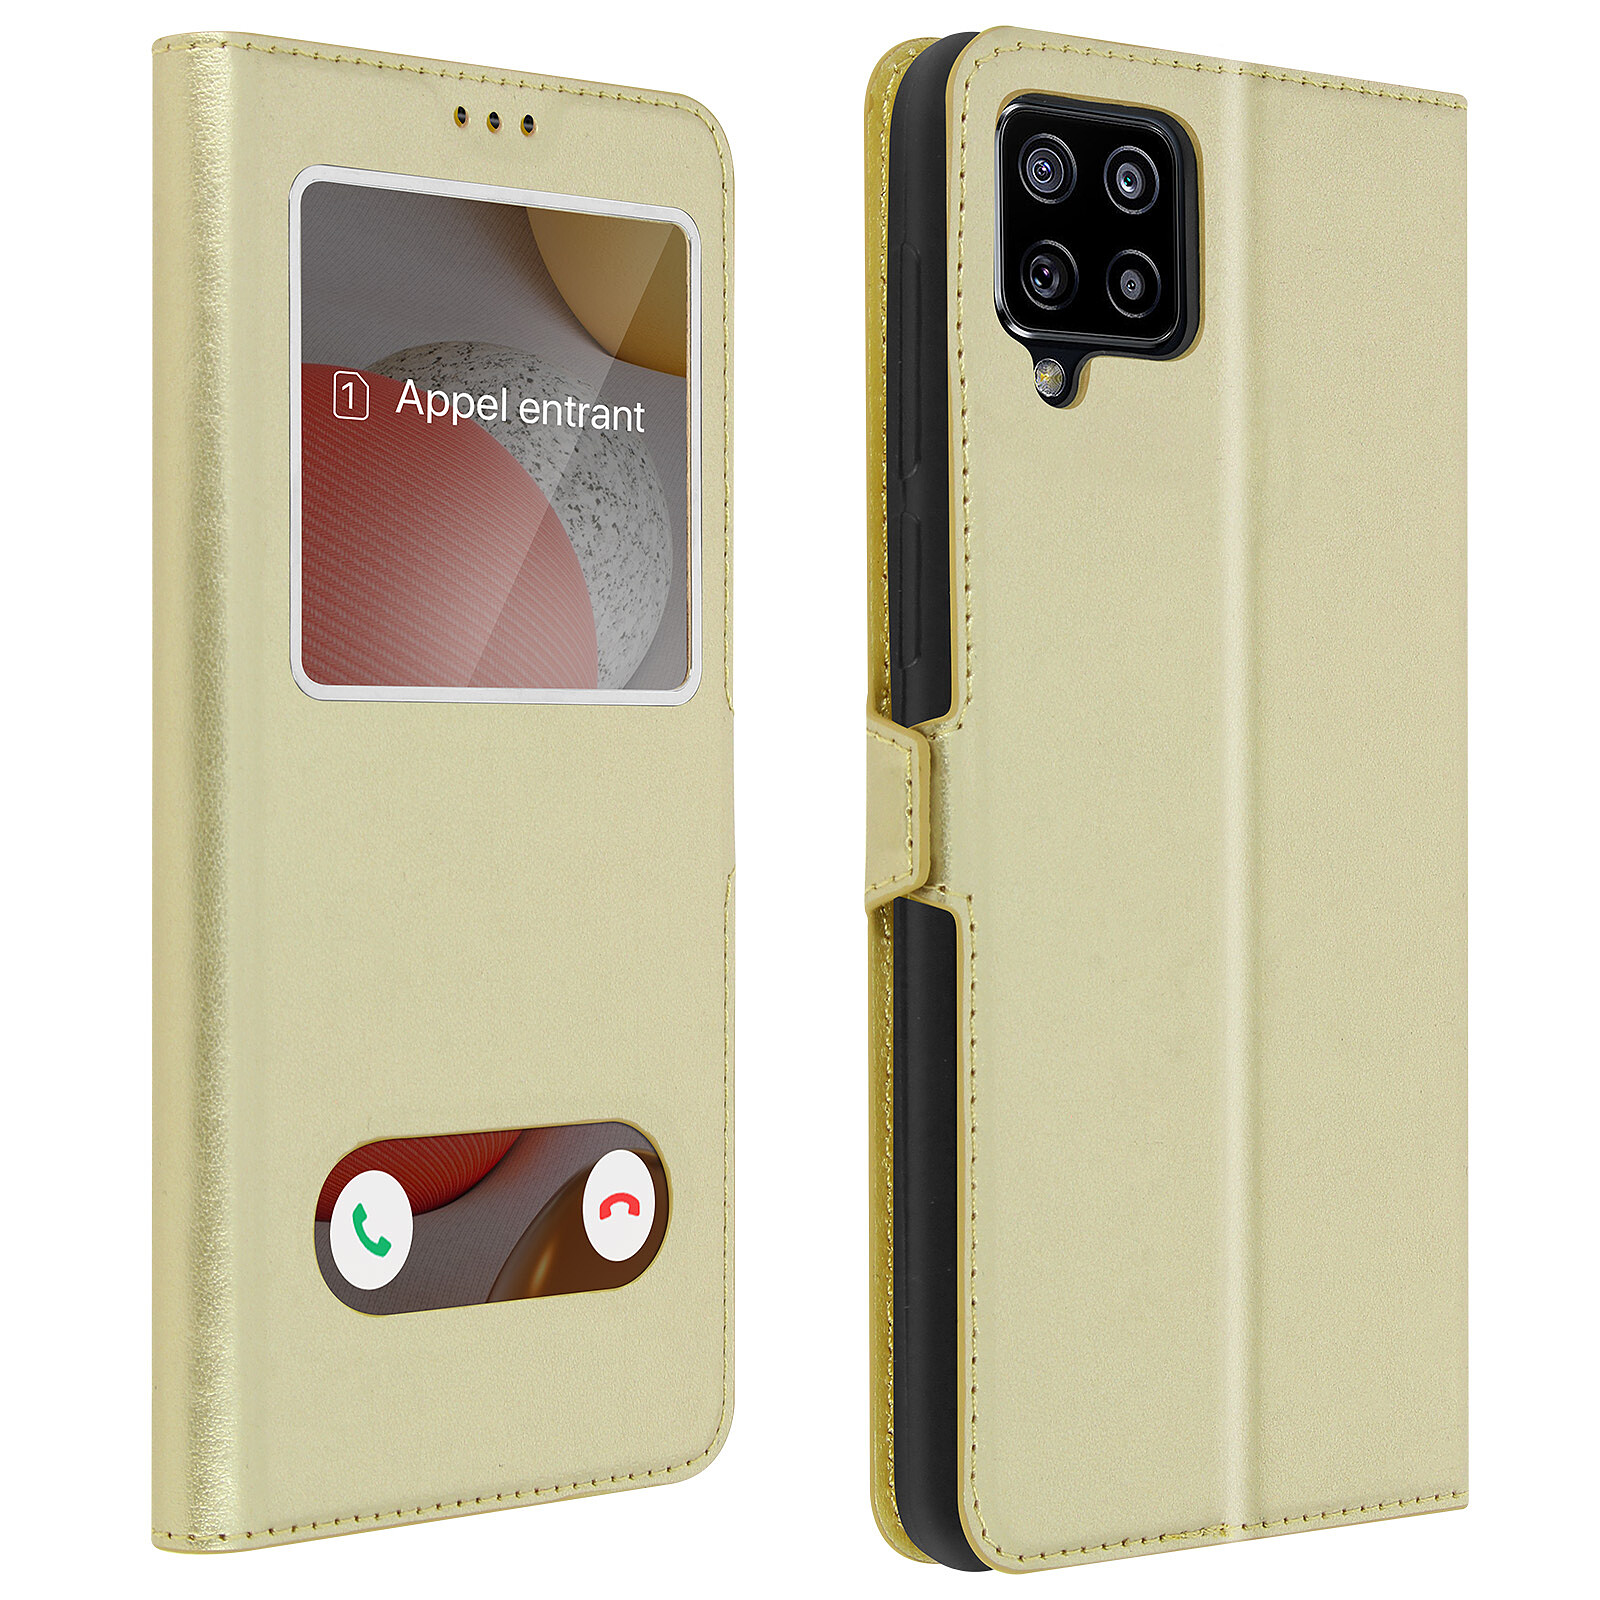 Vepbk pour Samsung Galaxy A42 5G Coque Etui Housse Flip Case avec Motif Coloré Porte Carte Magnétique à Rabat Coque en Cuir Portefeuille 360 Degrés Antichoc Étui pour Samsung Galaxy A42 5G,Design 4